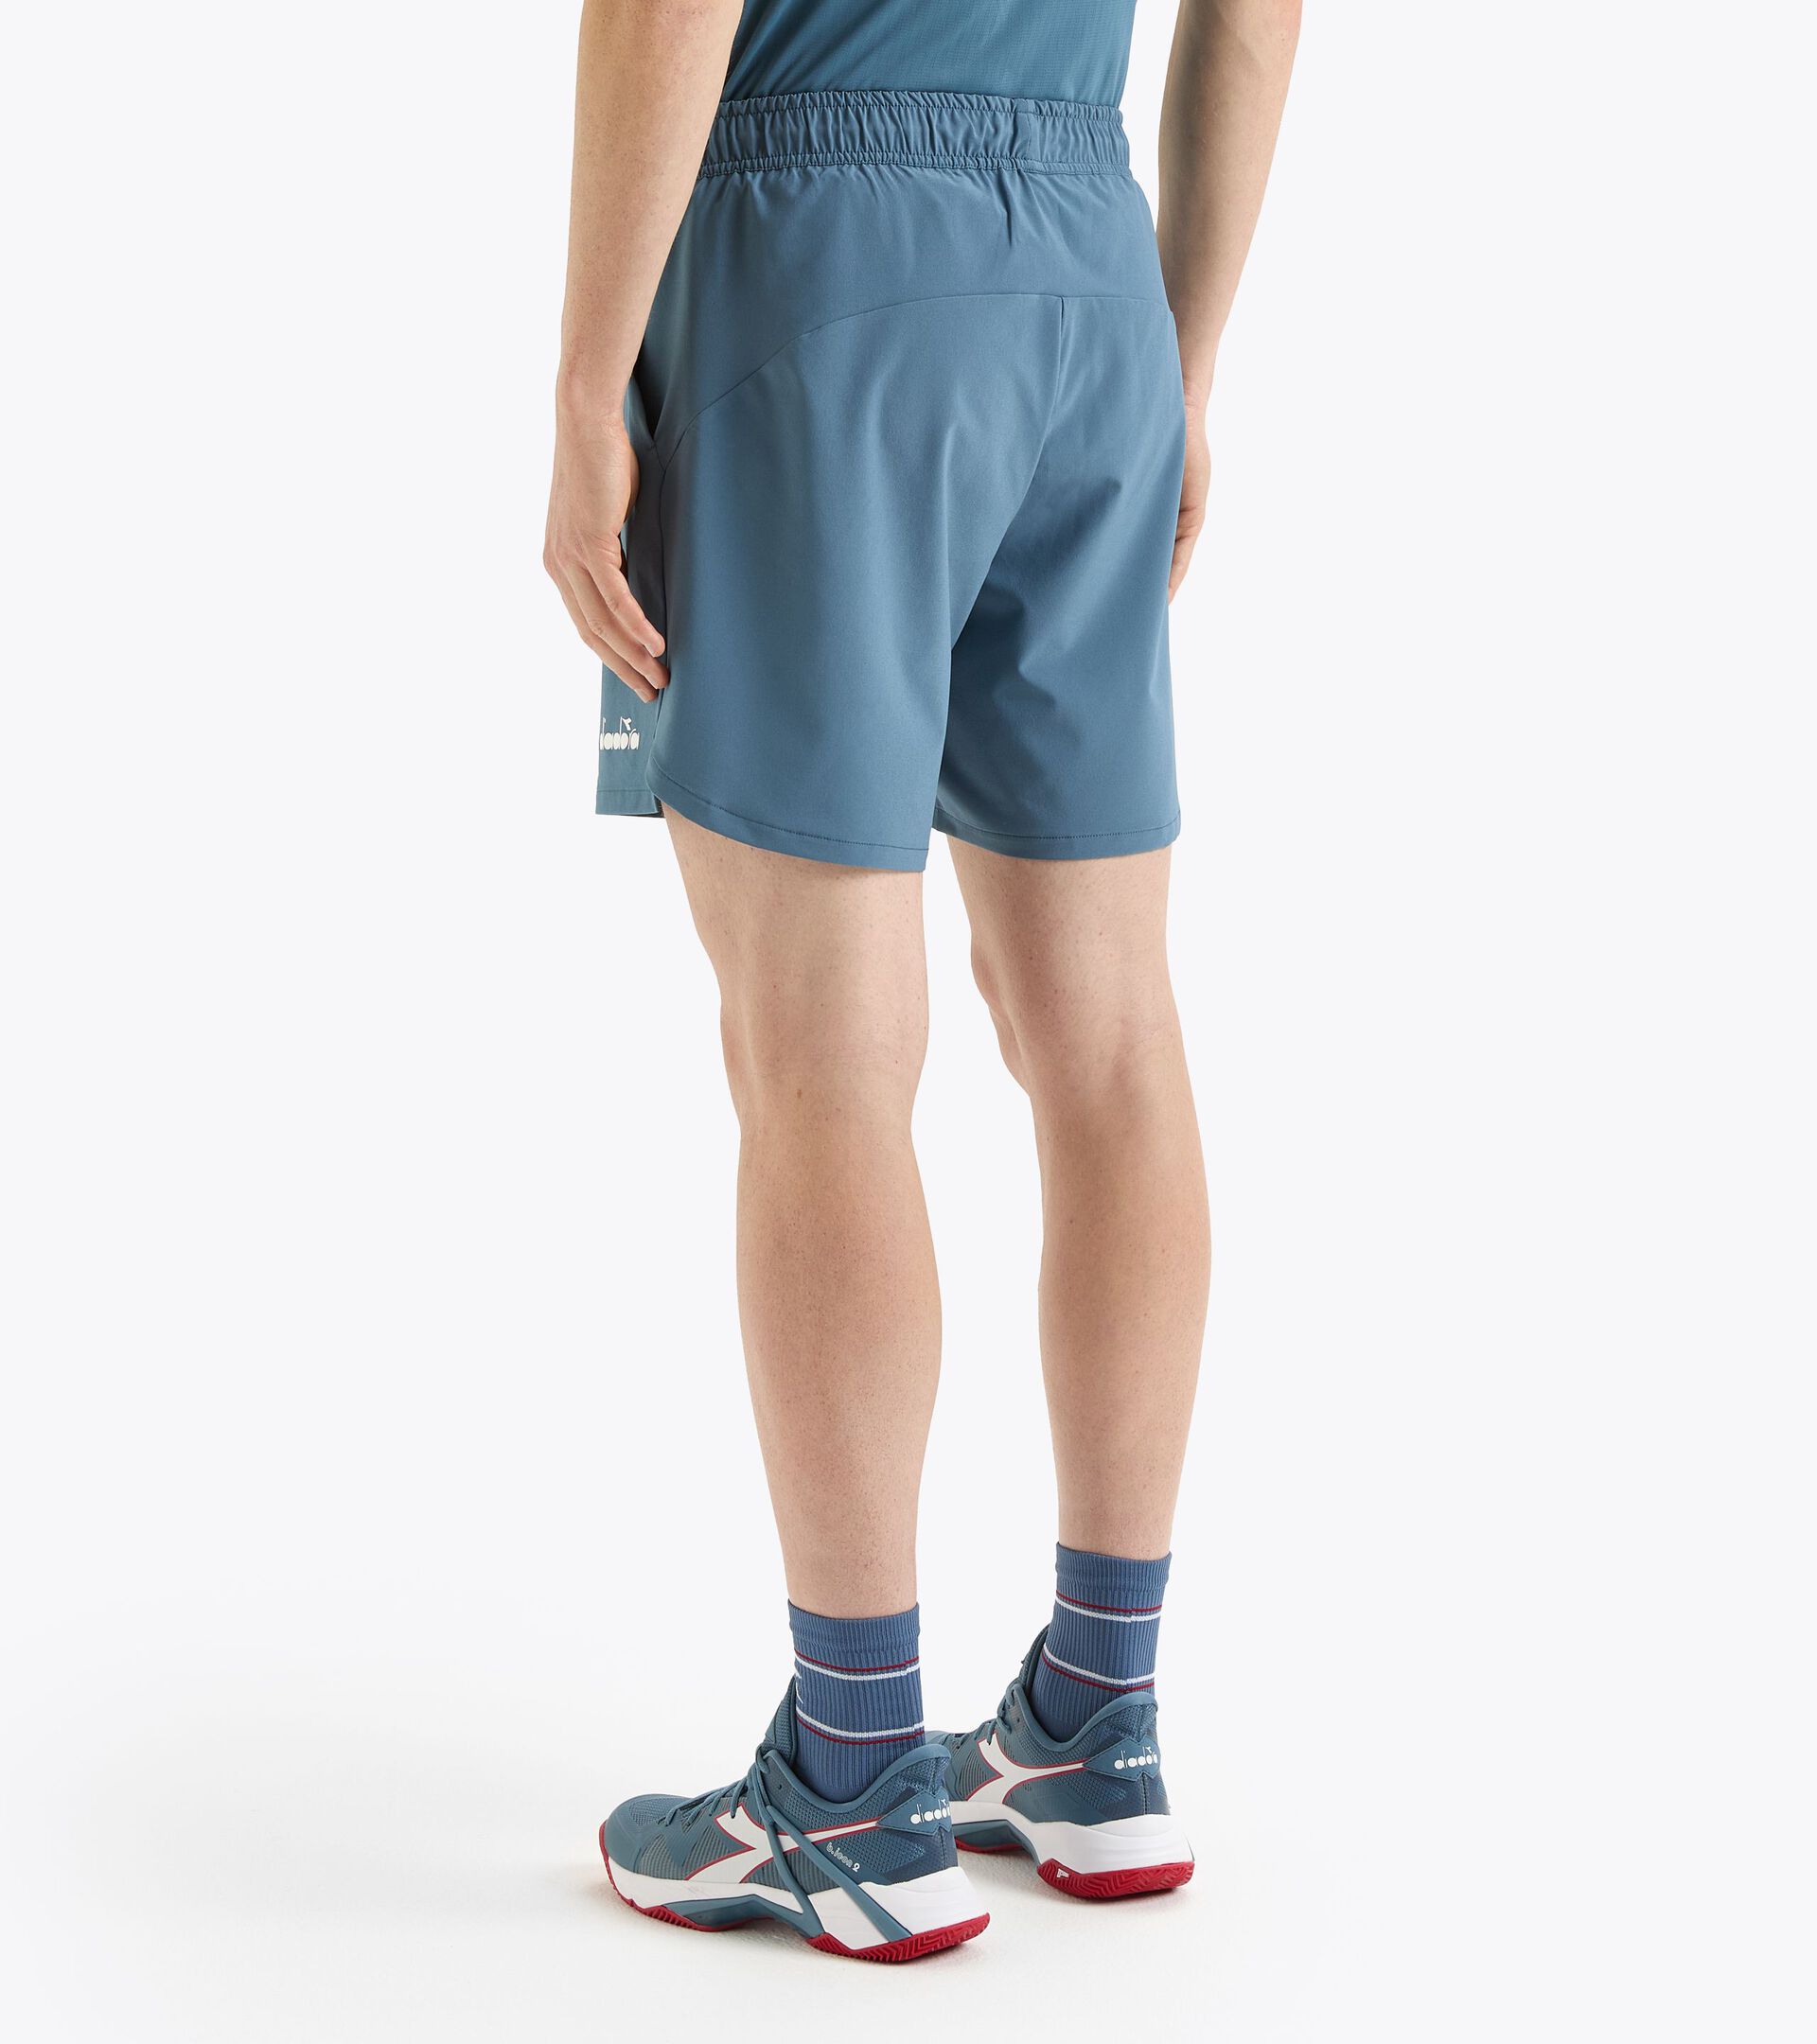 7’’ tennis shorts - Men’s
 SHORTS ICON 7" OCEANVIEW - Diadora